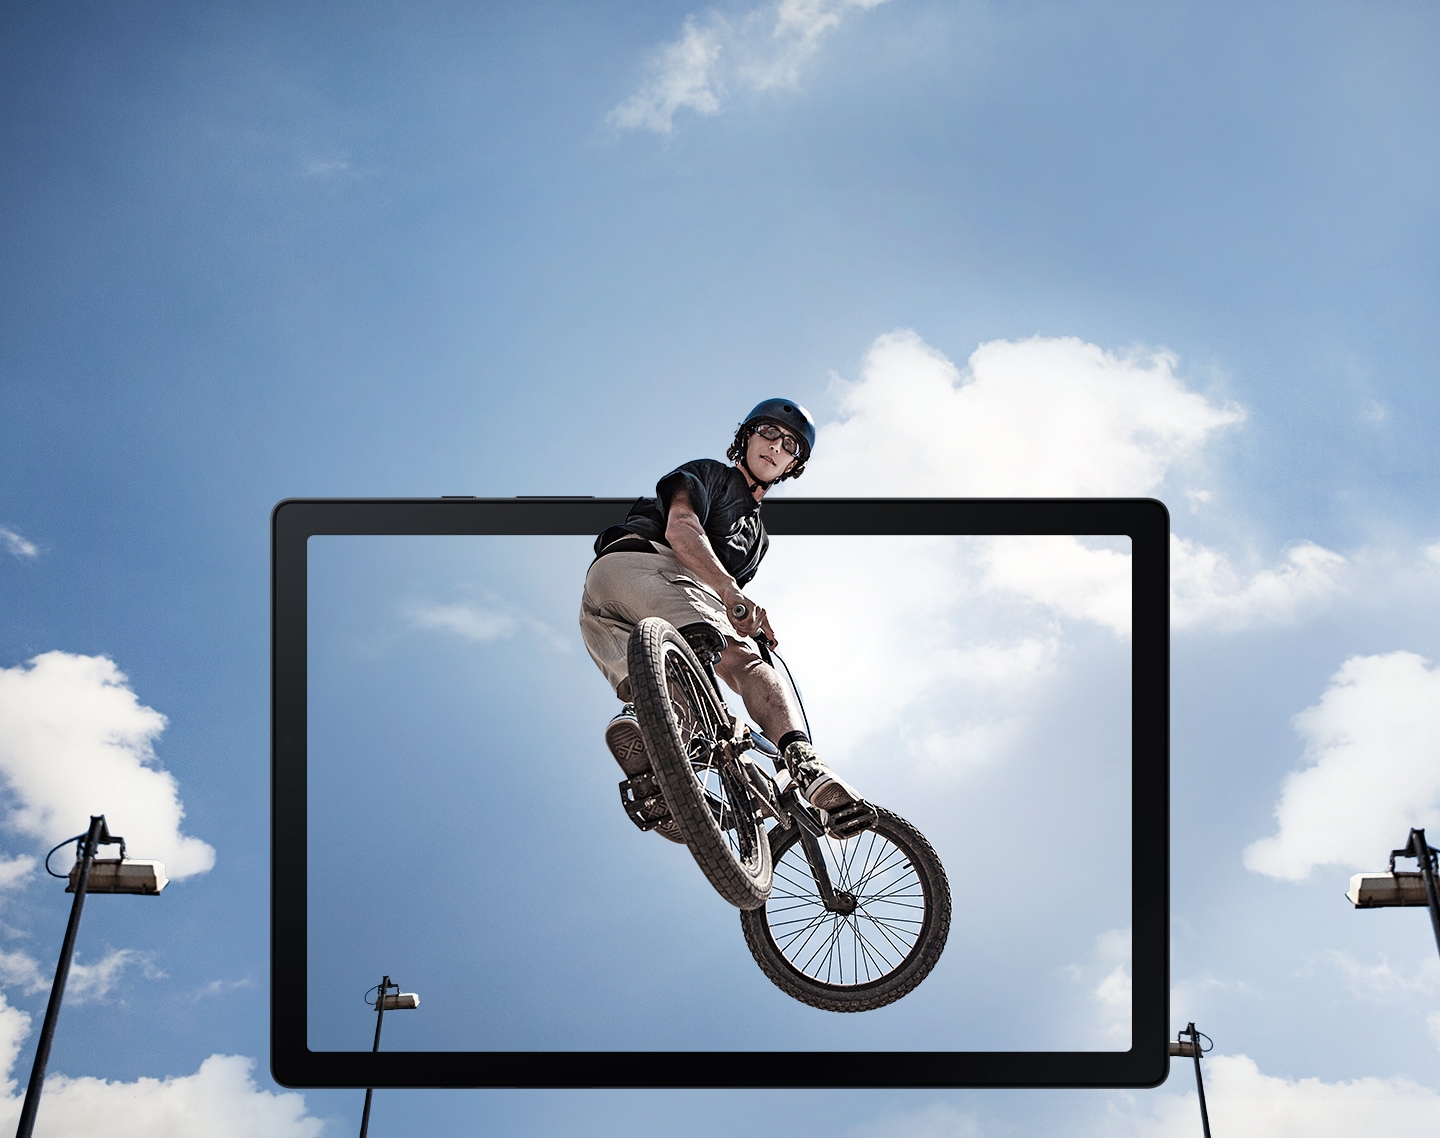 ภาพของผู้ชายคนหนึ่งที่กระโดดเนินด้วยรถจักรยาน BMX ลอยอยู่กลางอากาศนั้นยื่นออกมาจากหน้าจอแท็บเล็ต